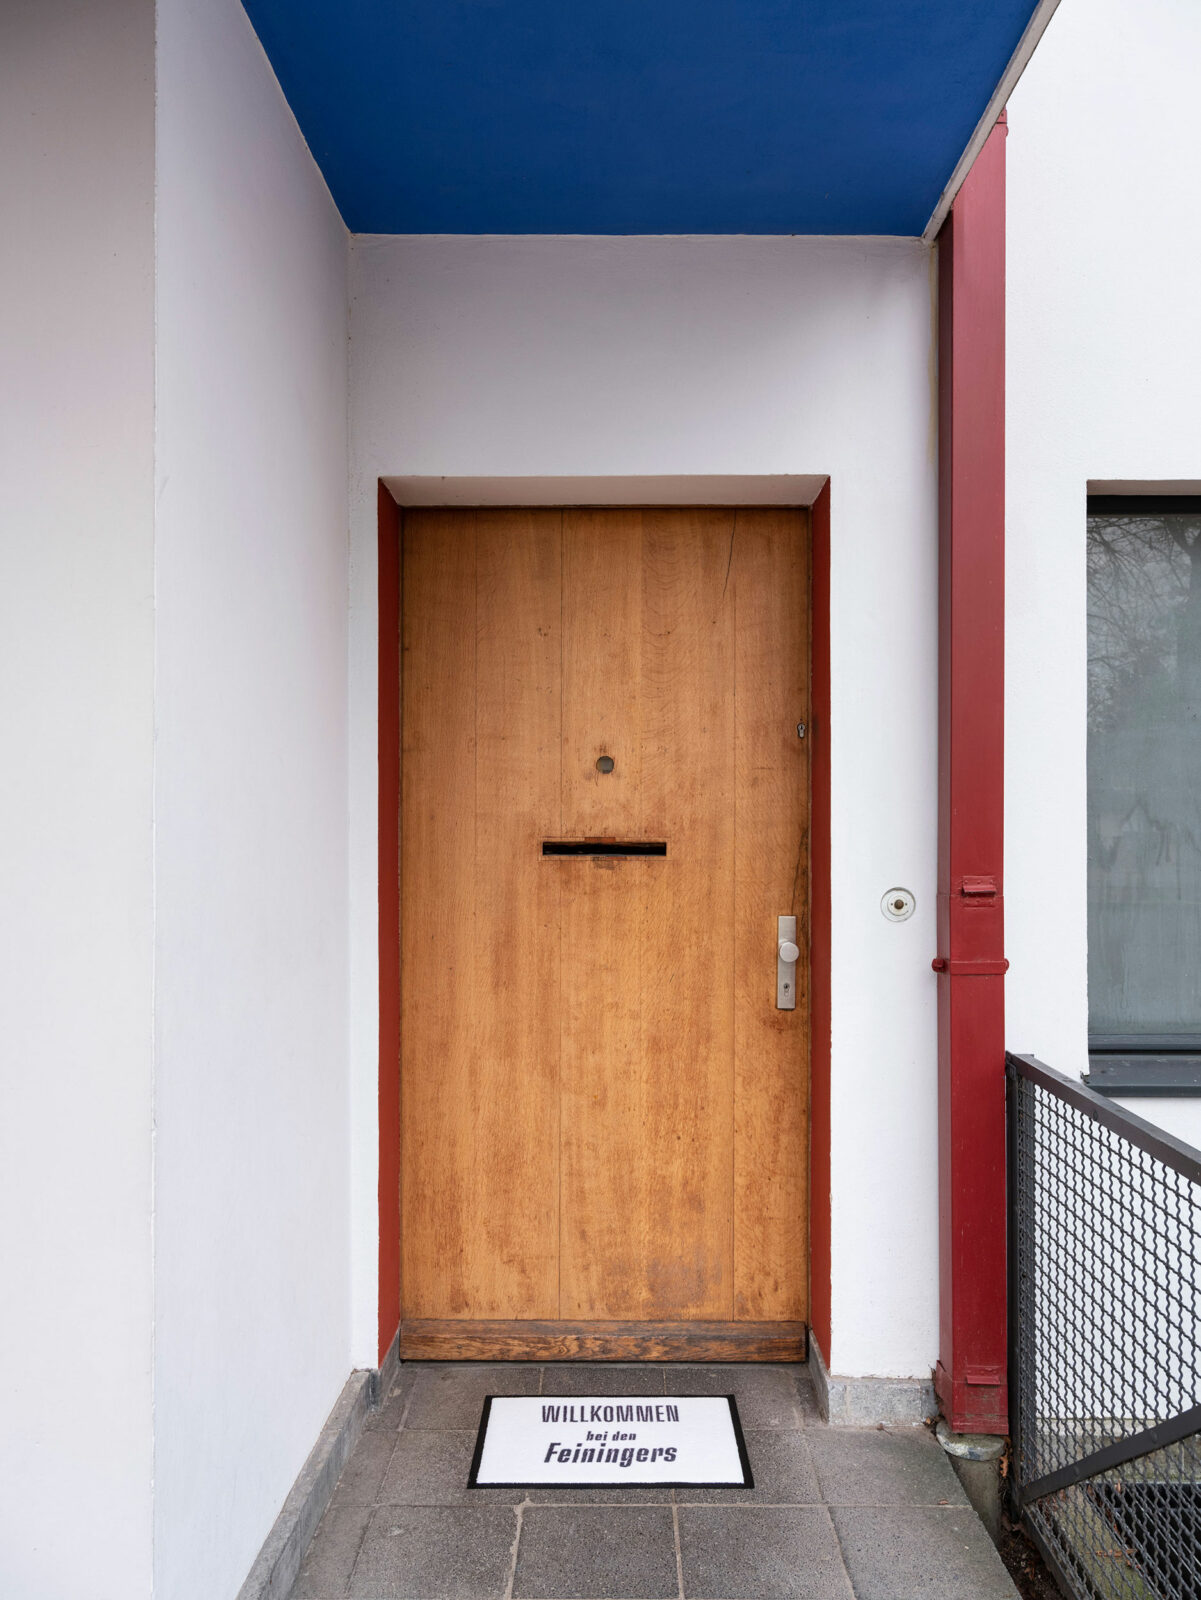 Hölzerne Eingangstür mit roter Fassung. Die Decke des überkragenden Obergeschosses ist blau gestrichen. Vor der Tür liegt ein Fußabtreter mit der Beschriftung 